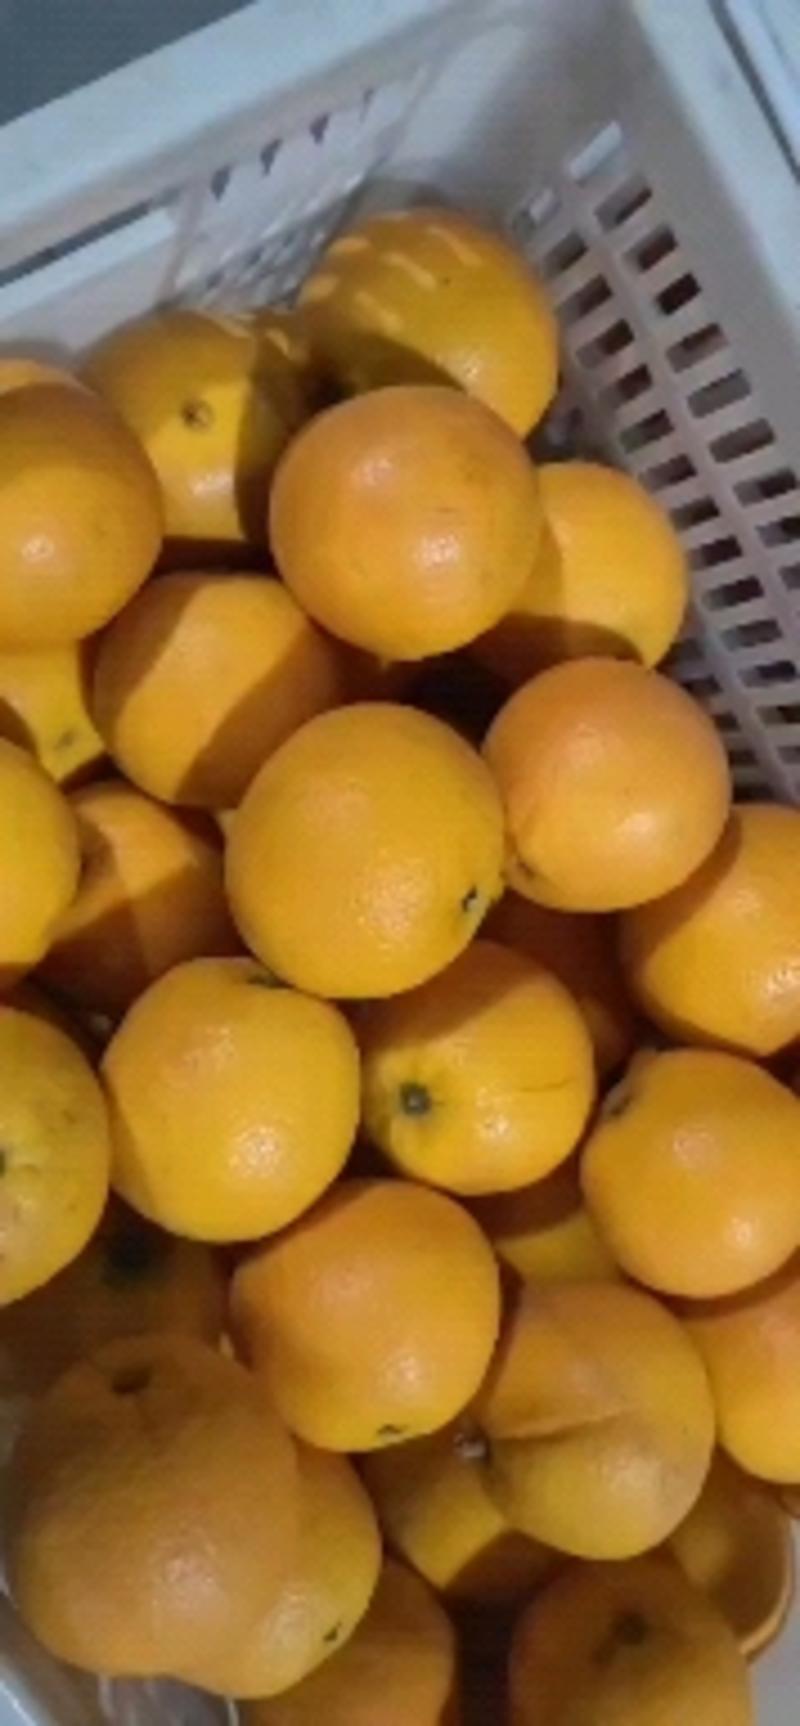 精品夏橙橙子湖北柑橘，产地柑桔，看货论价保质保量